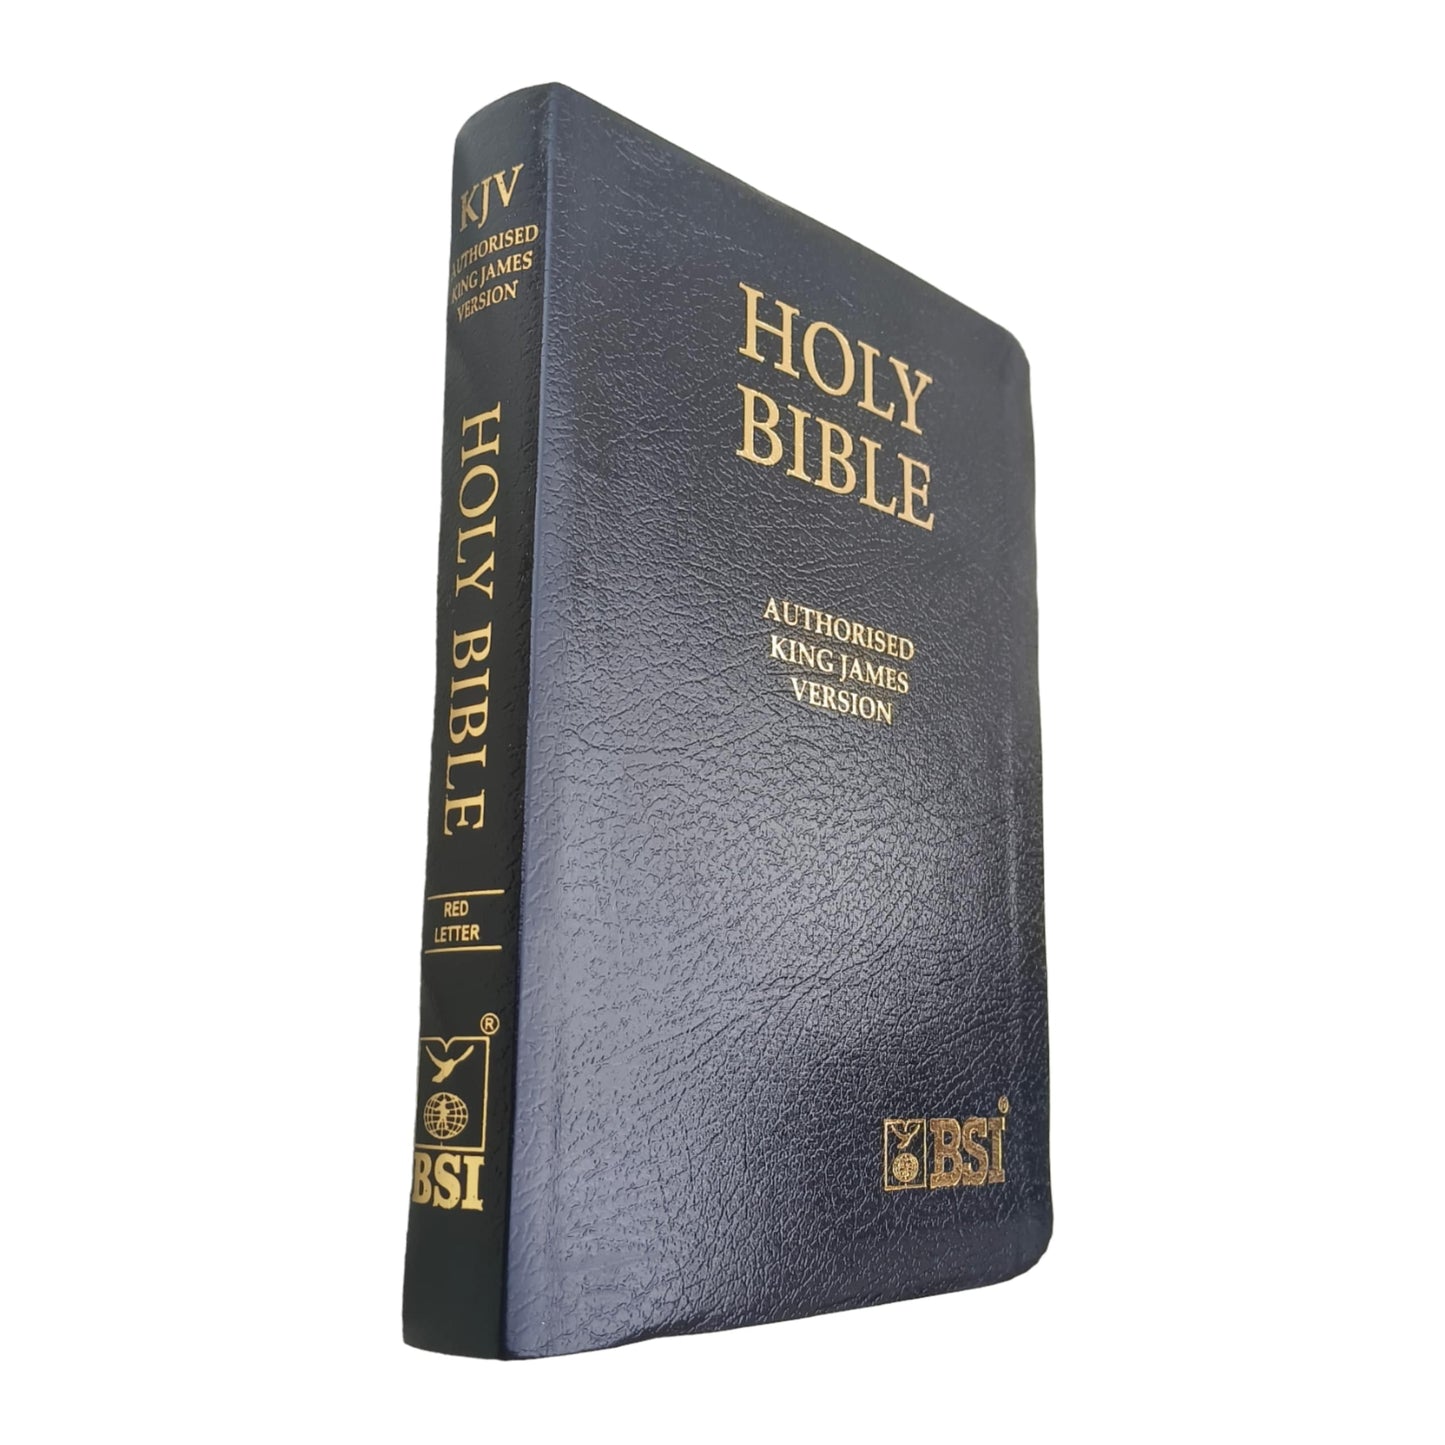 KJV Red Letter Edition Bible Black Leather Golden Edge